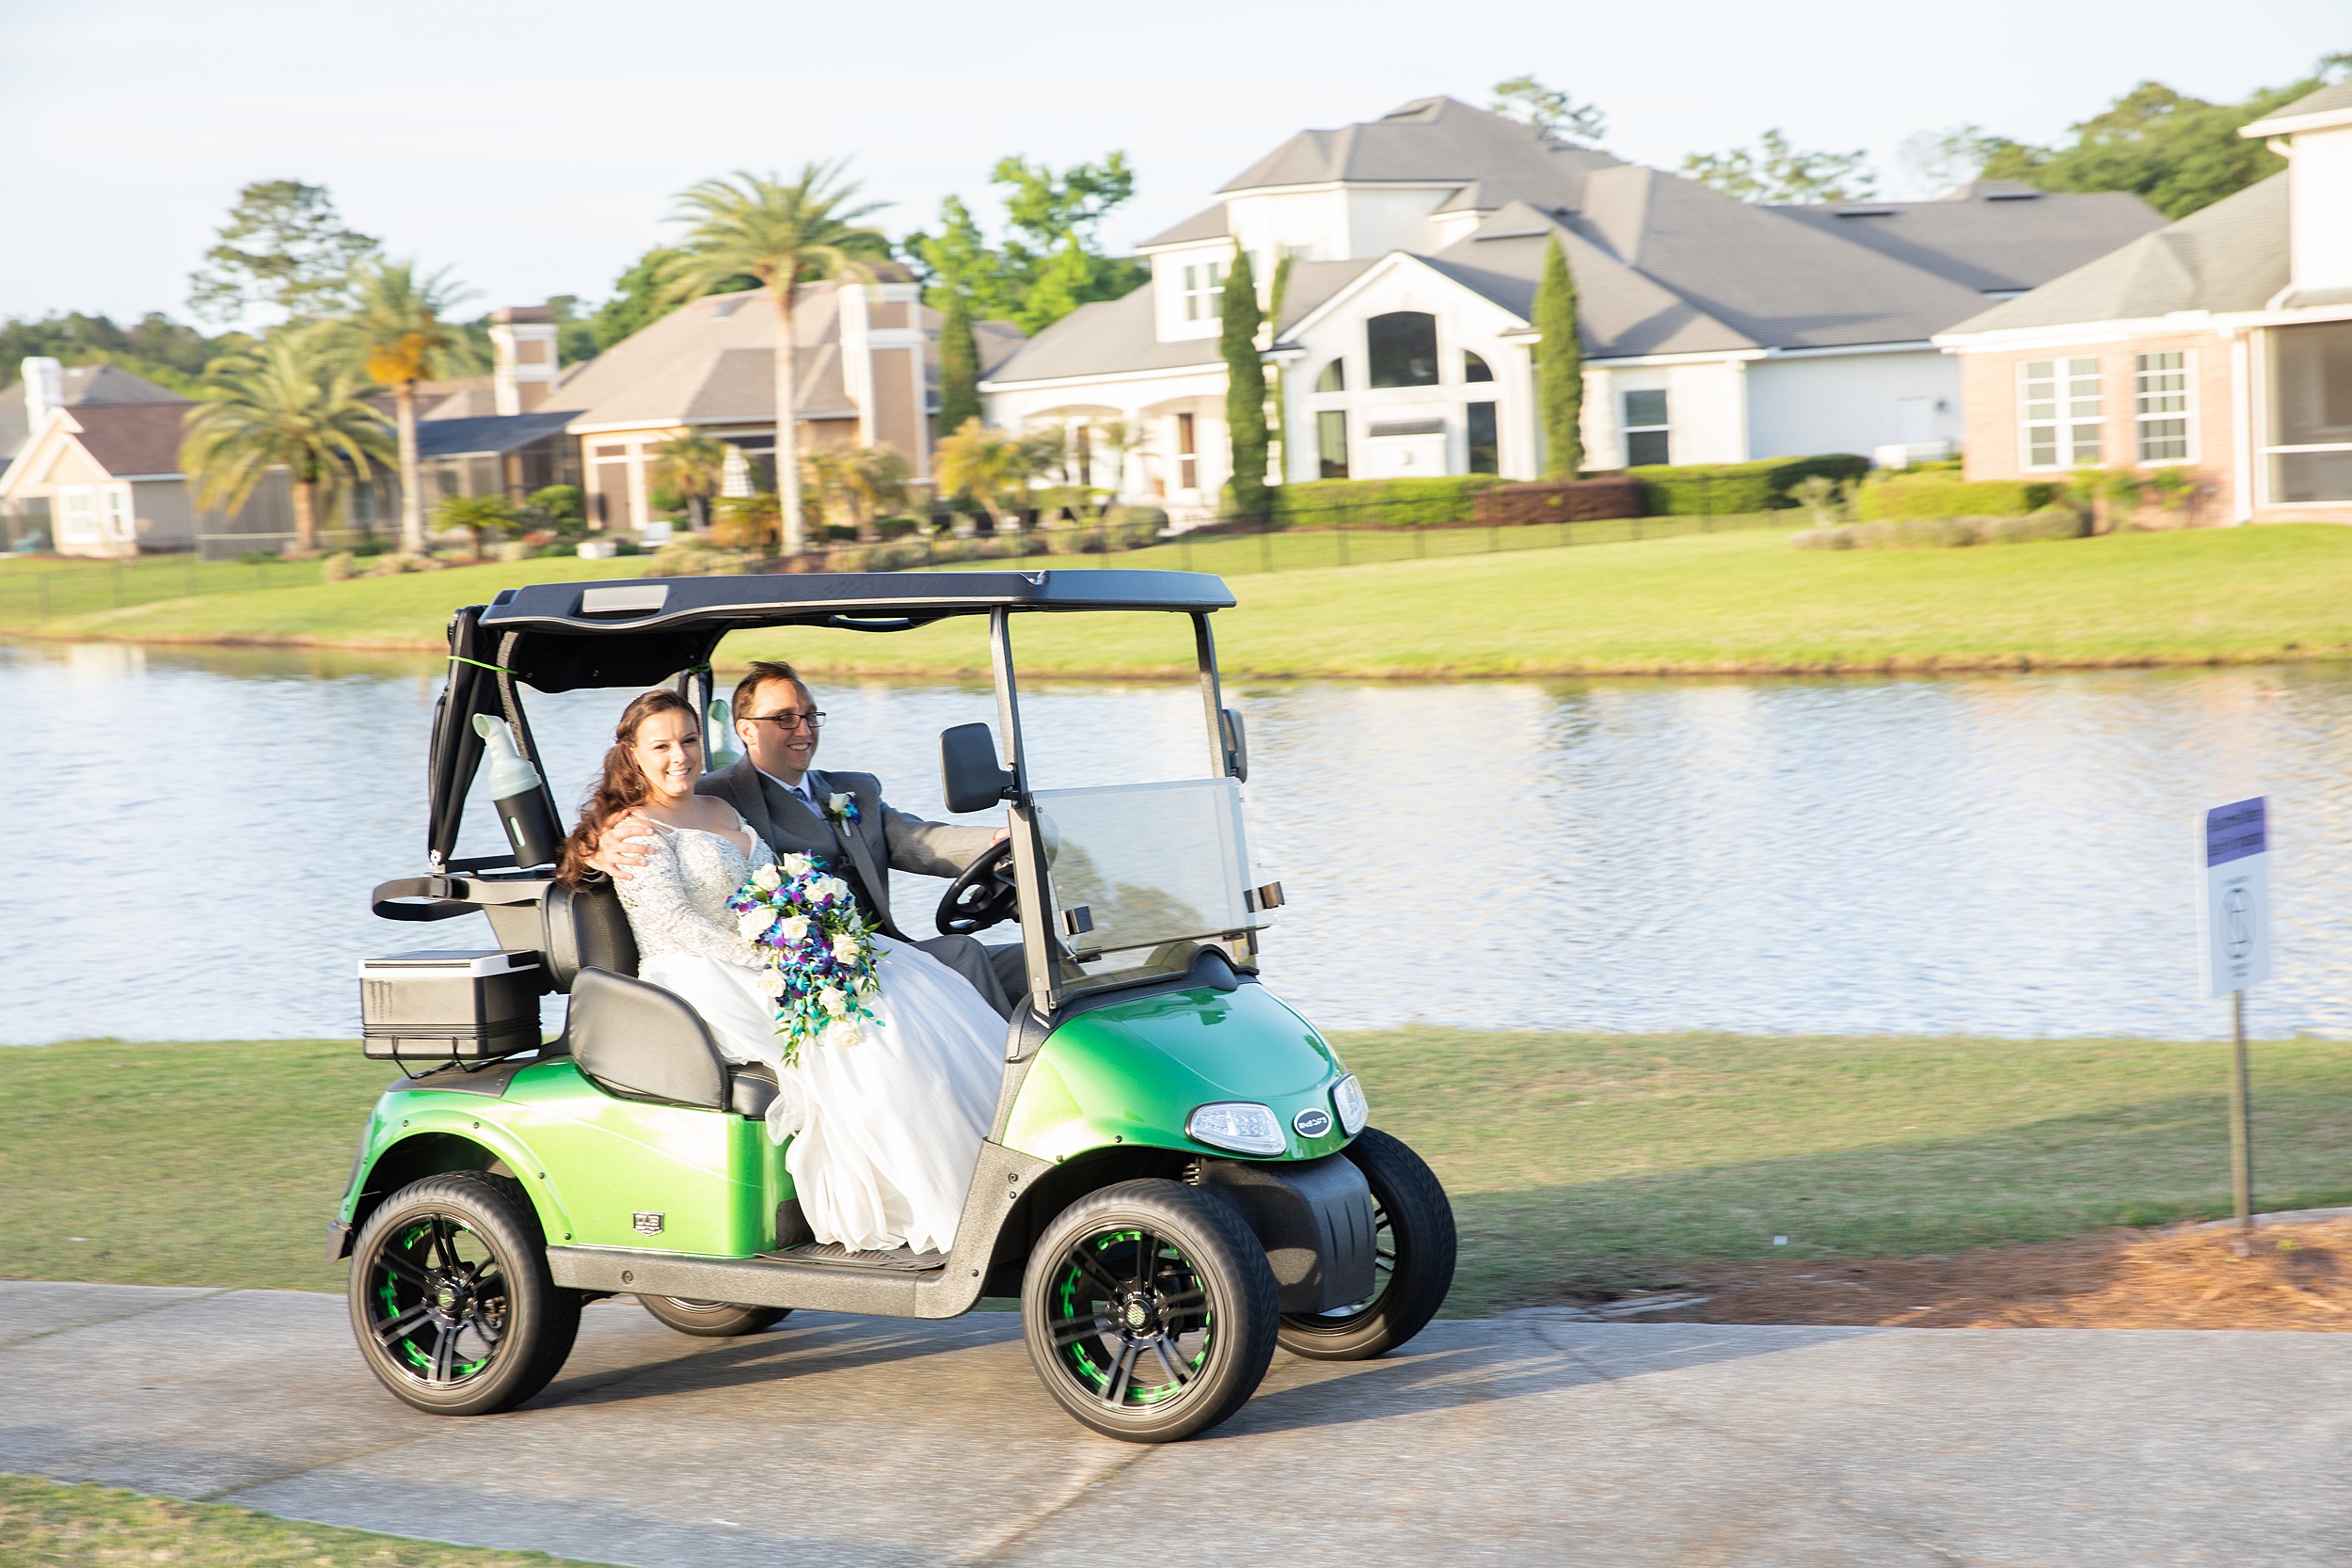 Newlyweds ride a golfcart down a path along a lake